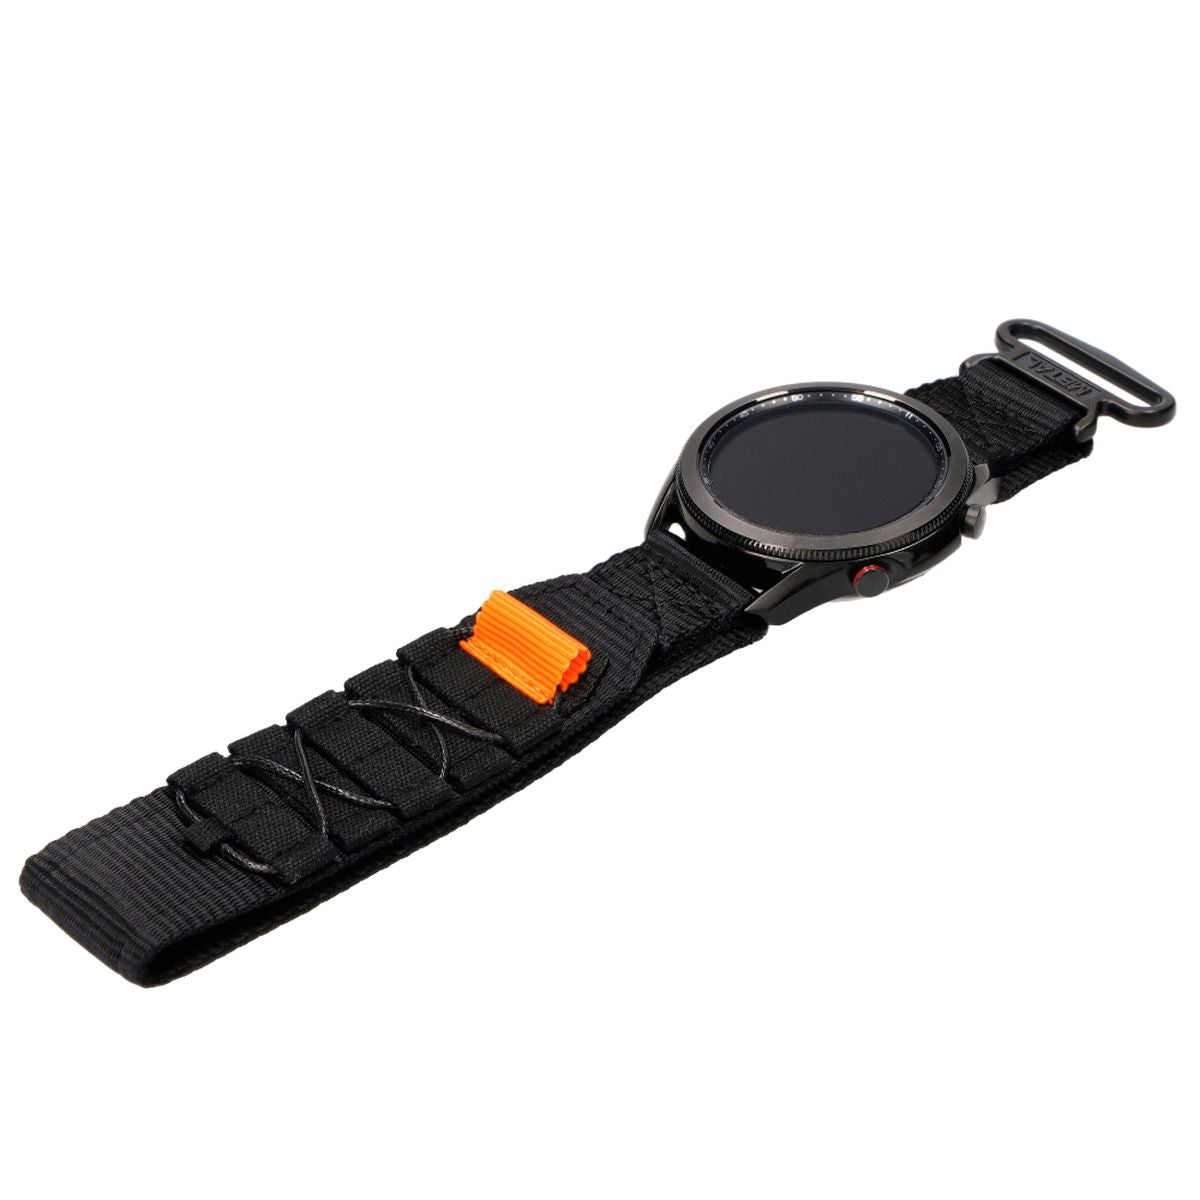 Sport-Armband für Galaxy Watch 22mm, Bizon Strap Watch Adventure, Schwarz